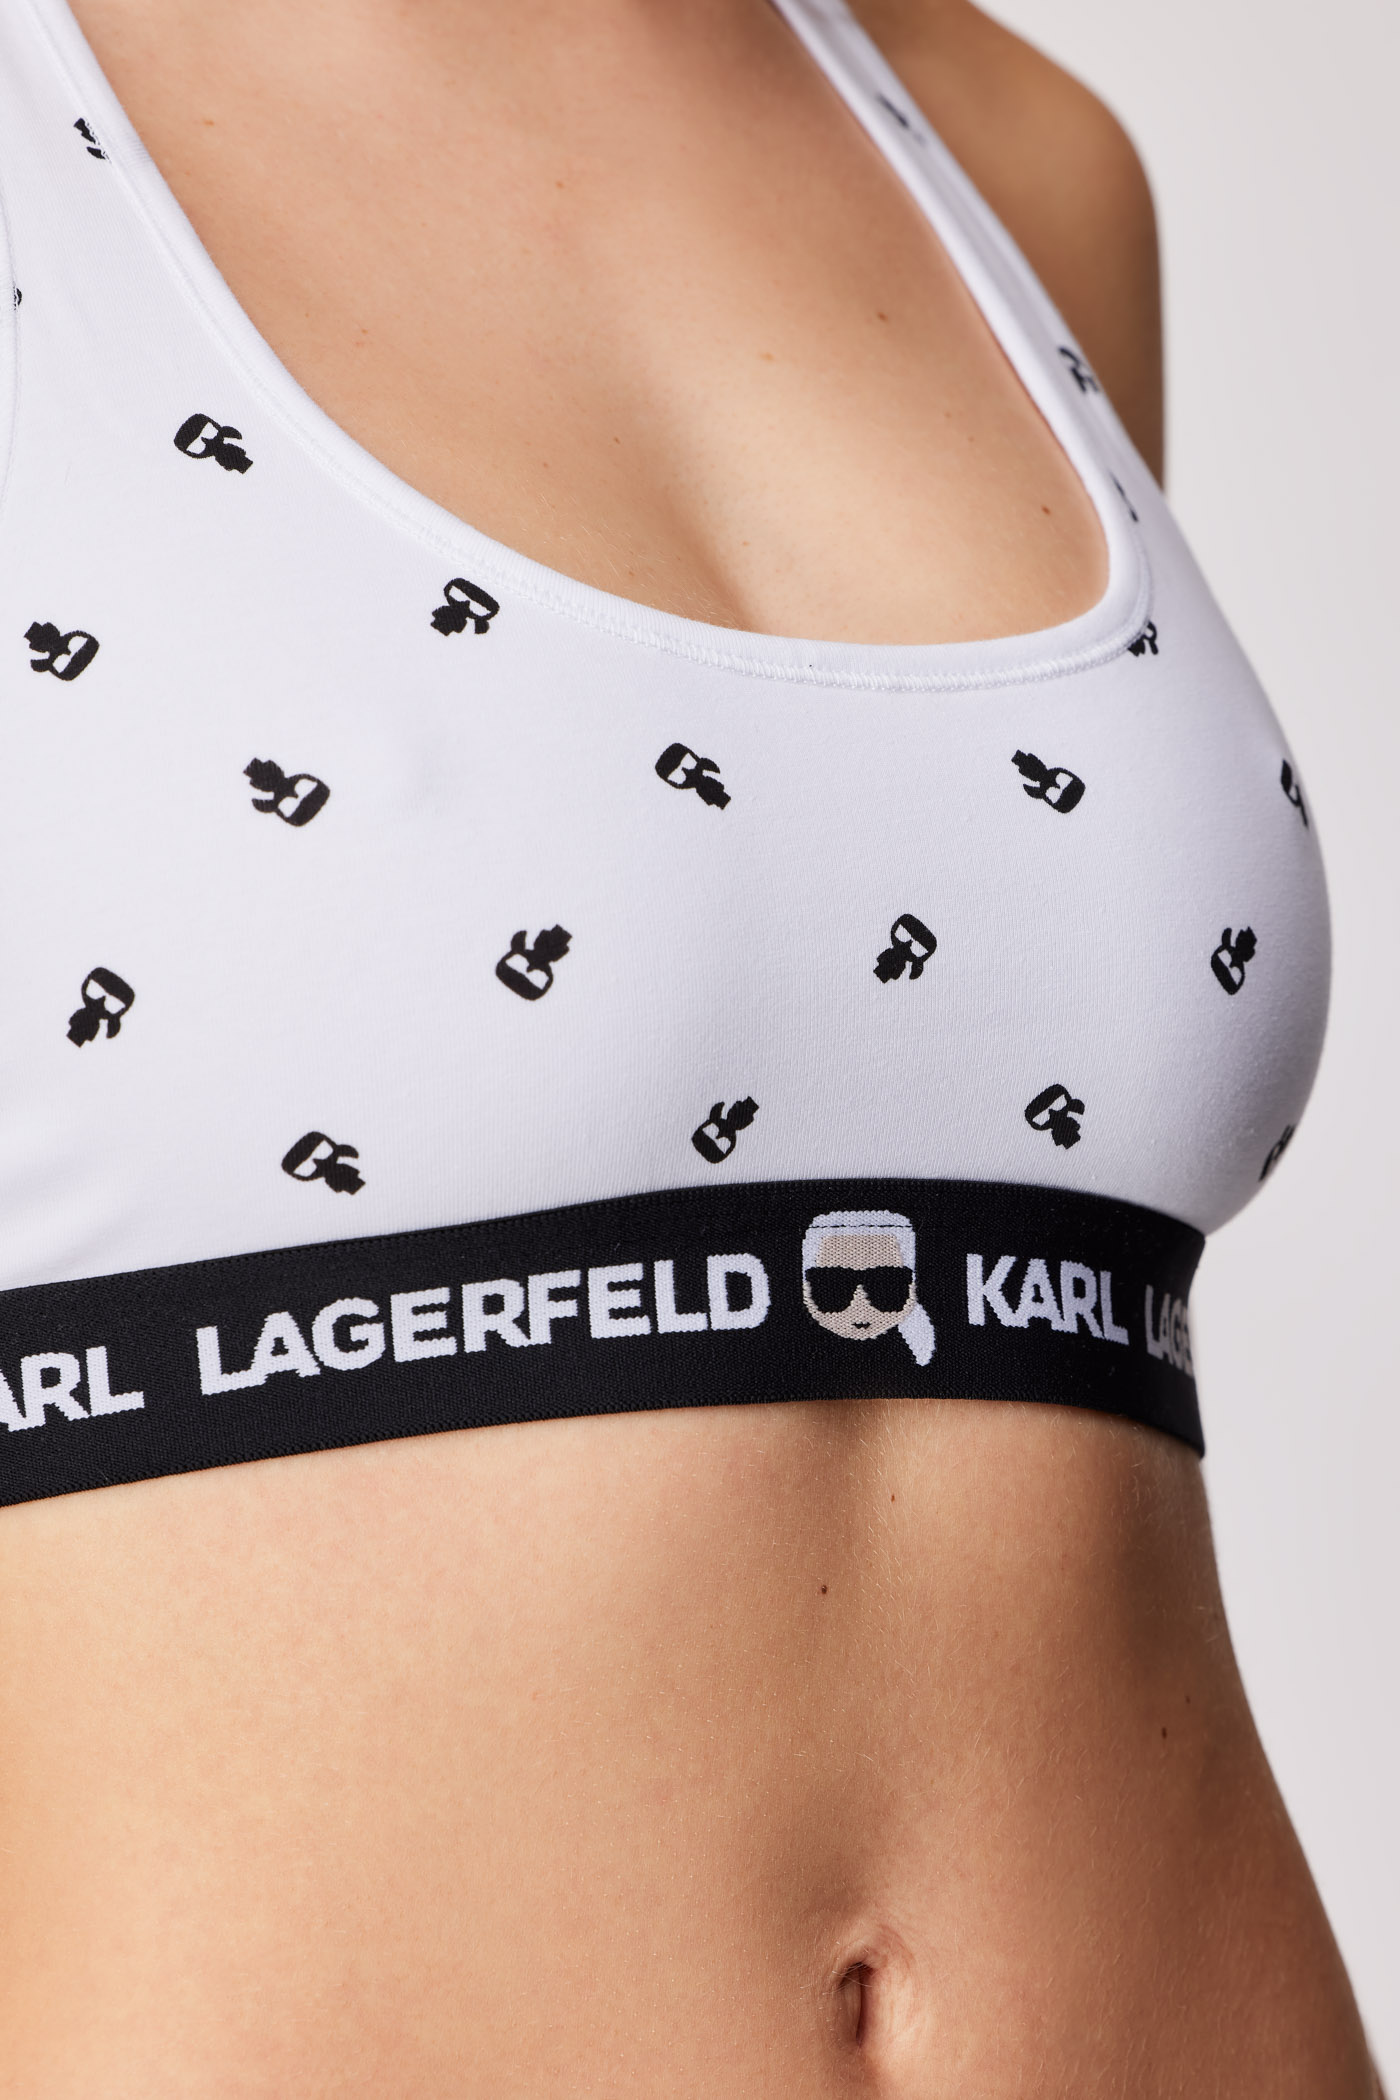 Nepodložen športni Modrček Karl Lagerfeld Iconic